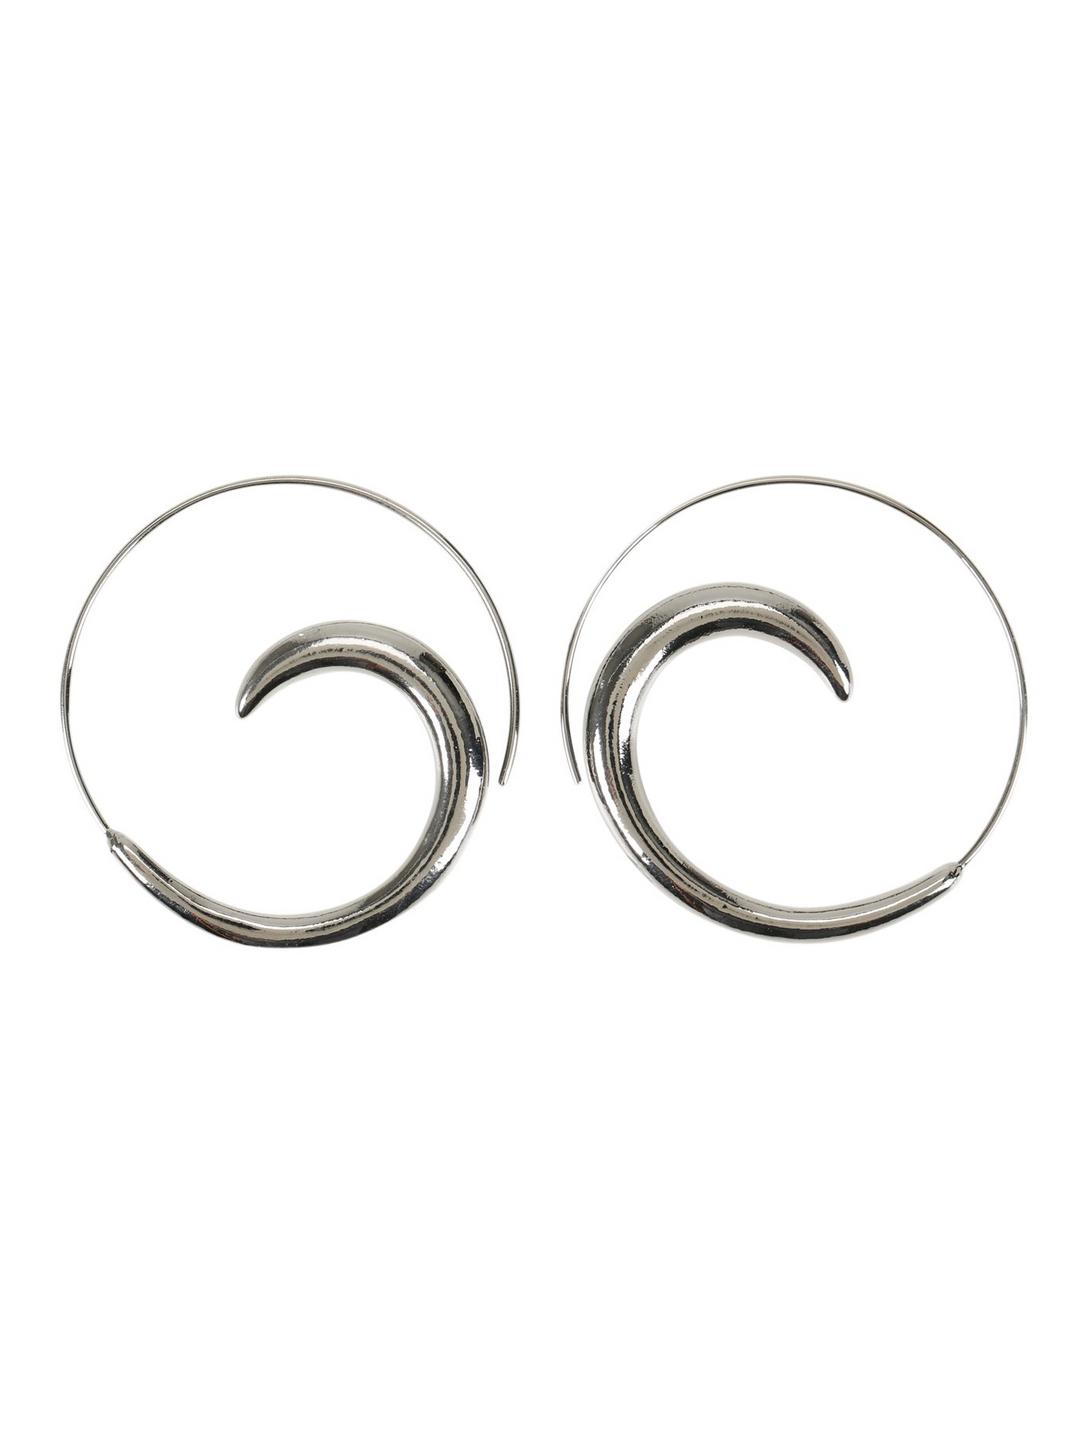 Blackheart Hematite Swirl Earrings, , hi-res